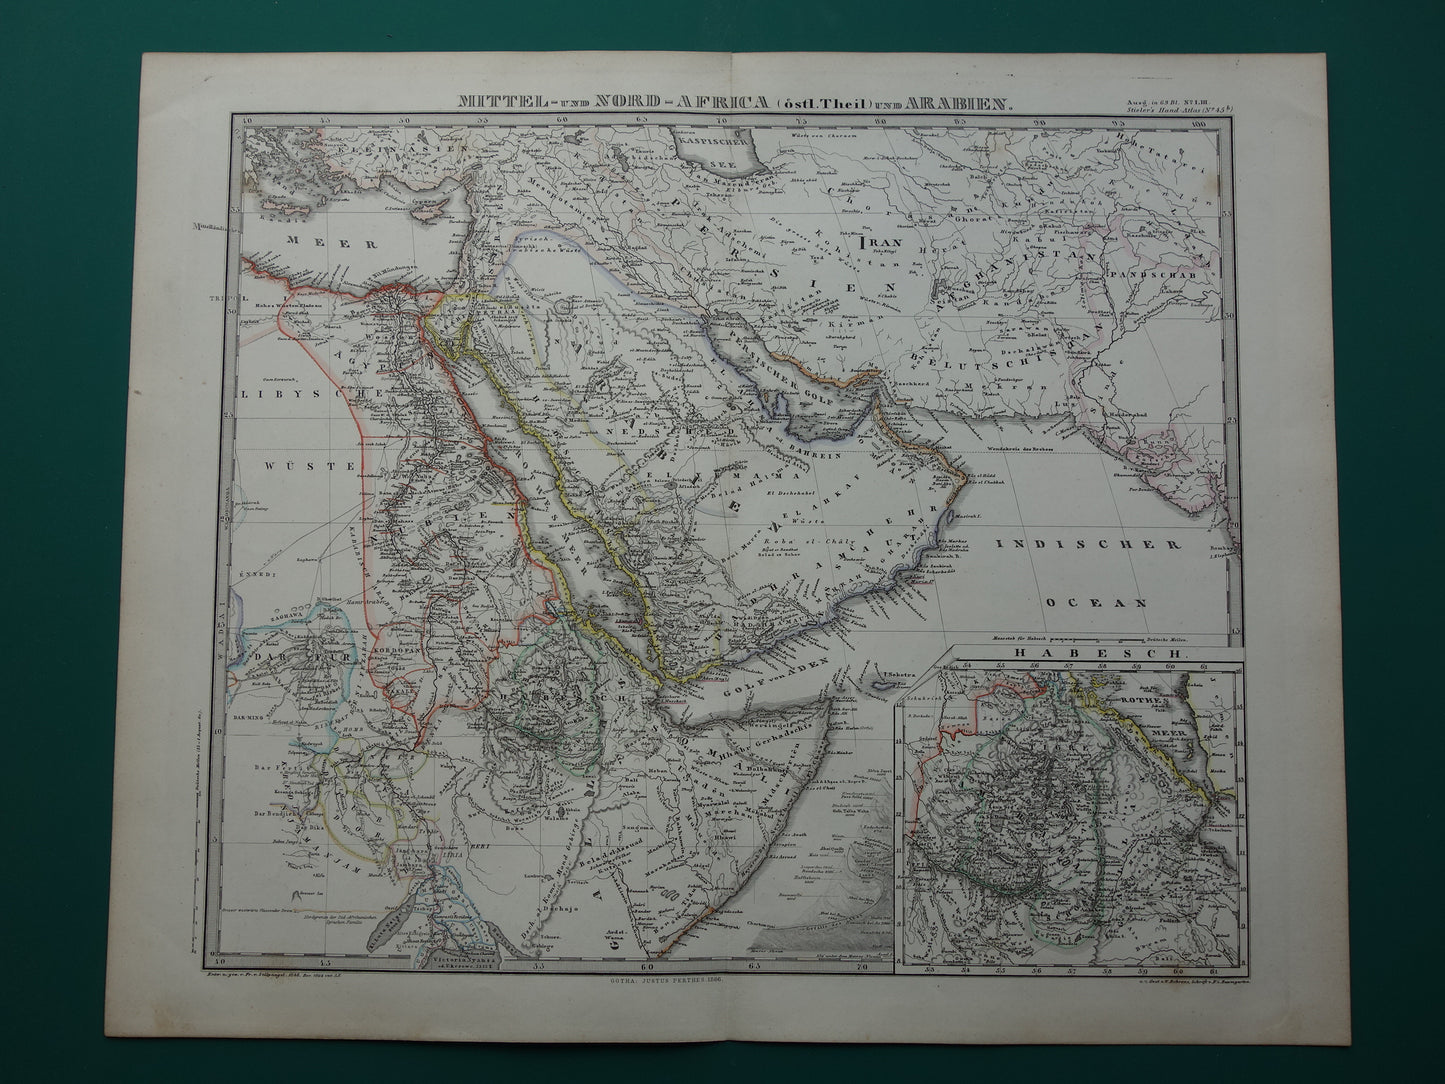 Saoedi-Arabië oude kaart van Saudi-Arabie 1866 grote originele antieke vintage landkaart Riyad Djedda